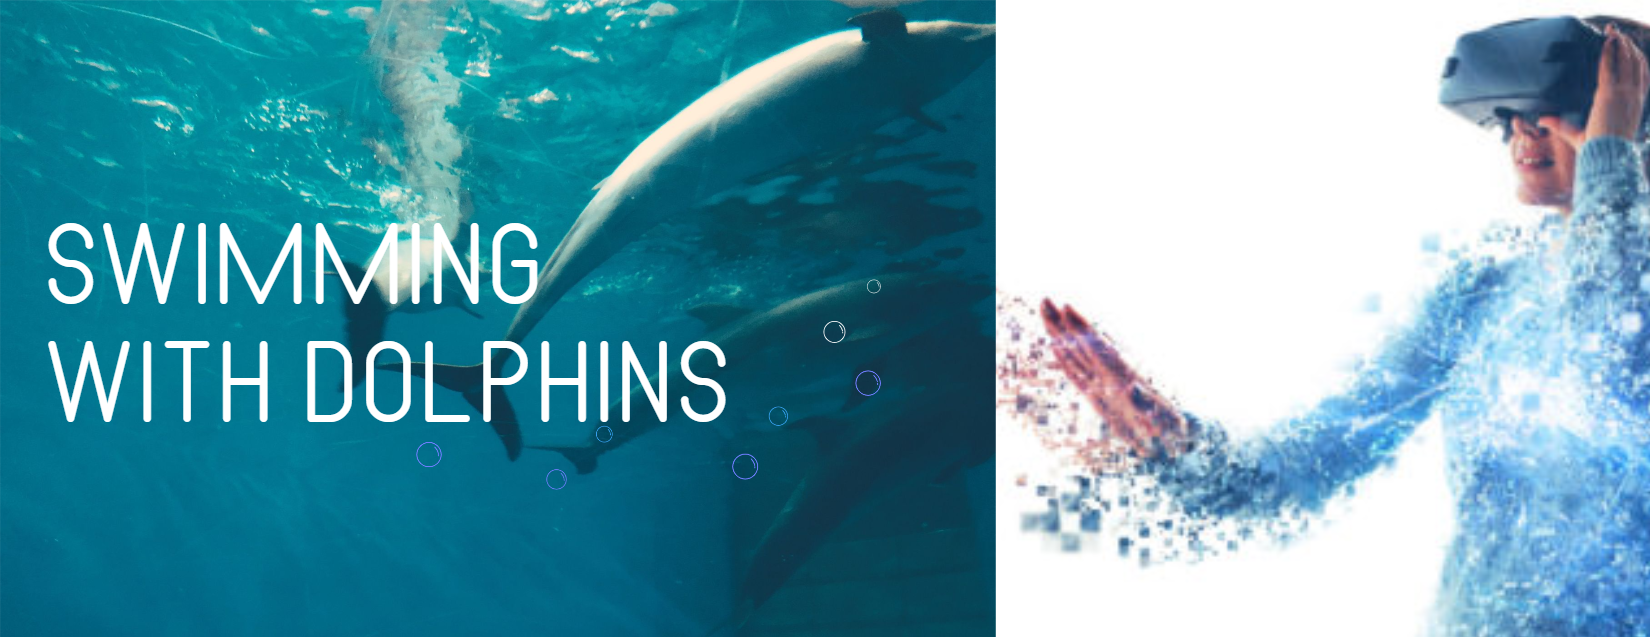 Nuotare con i delfini realtà virtuale